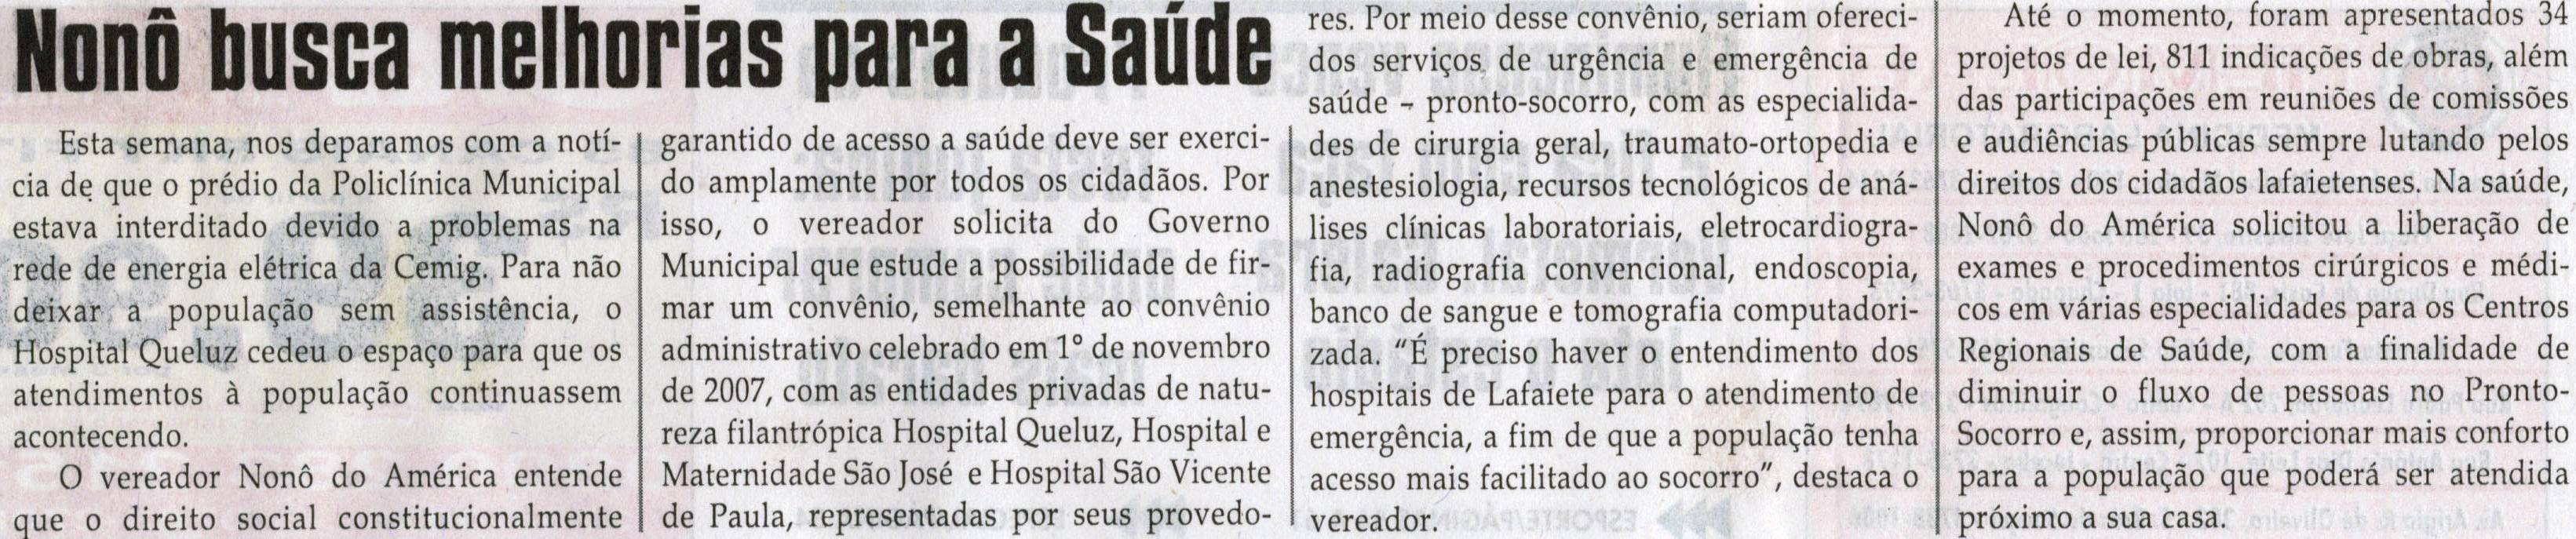 Nonô busca melhorias para a Saúde, Jornal Correio da Cidade, Conselheiro Lafaiete, 02 jun. 2012, p. 02.